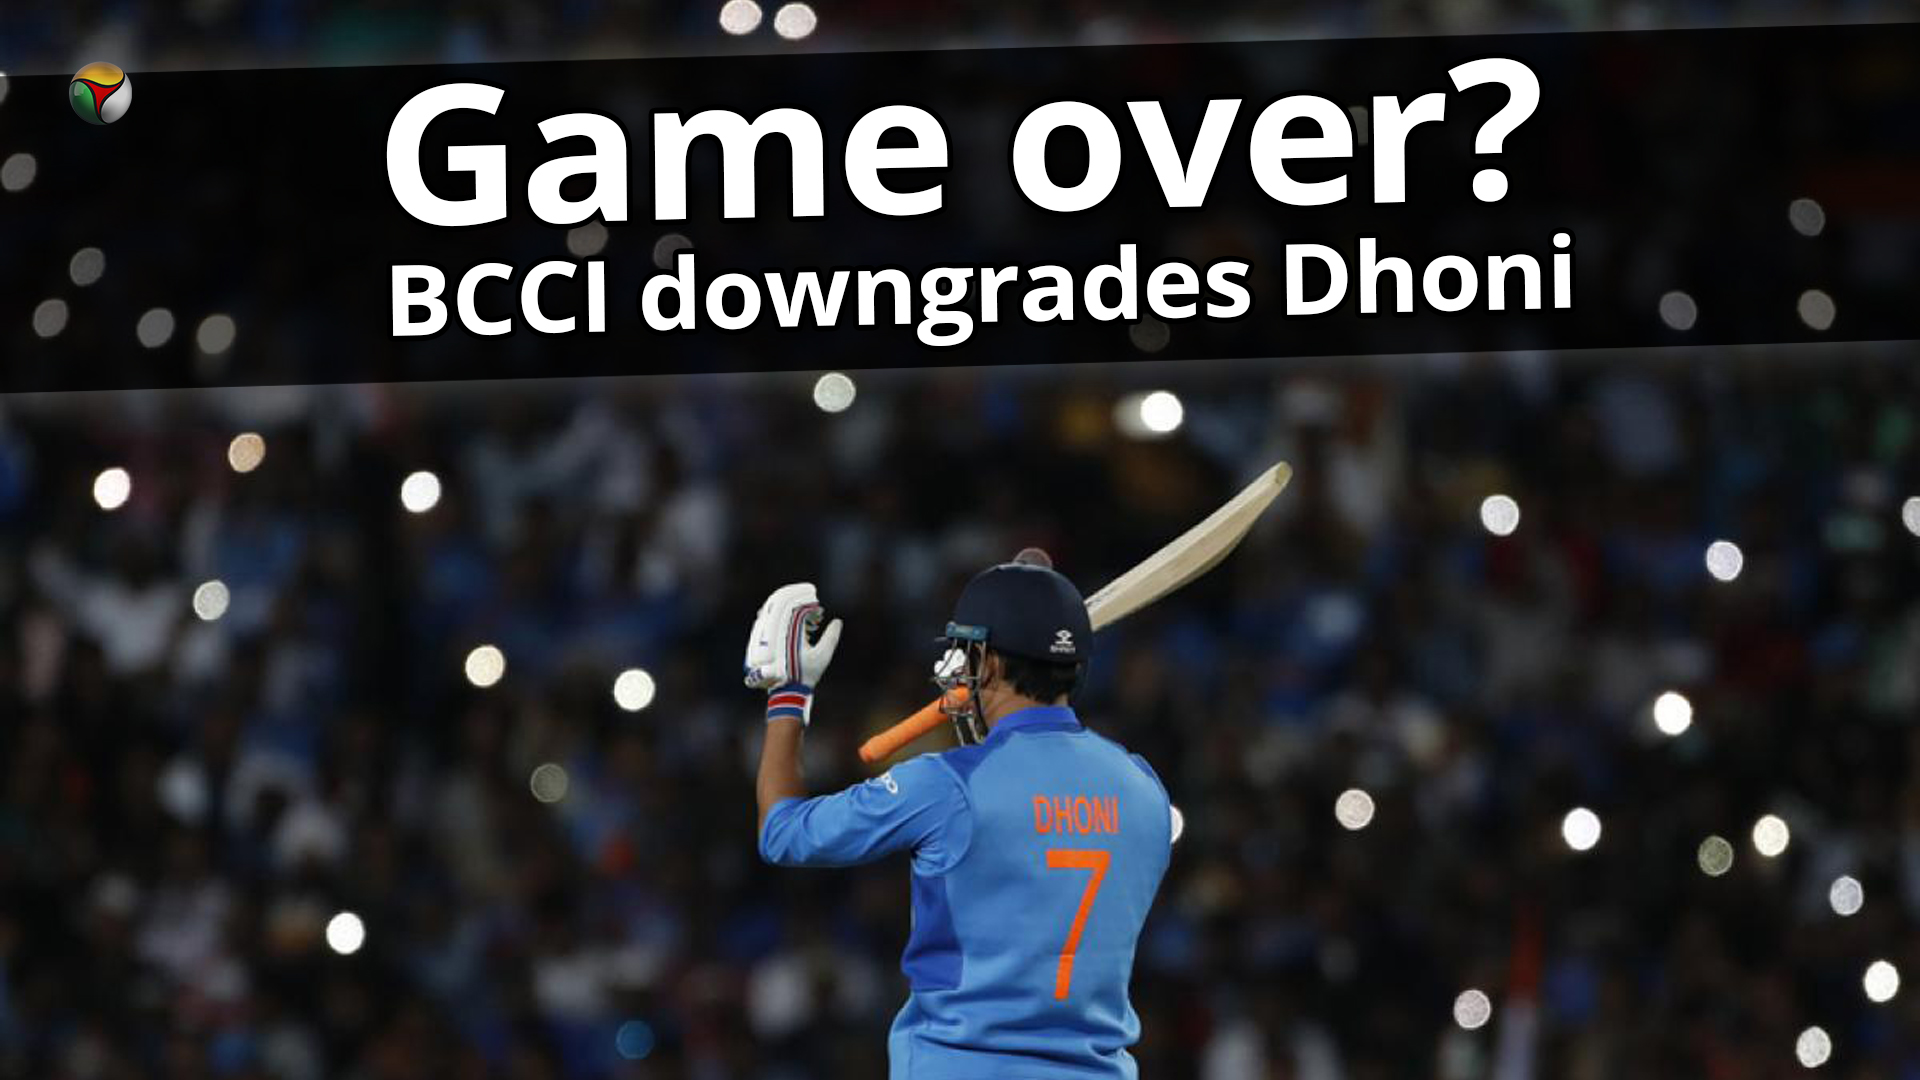 Game over? BCCI downgrades MS Dhoni